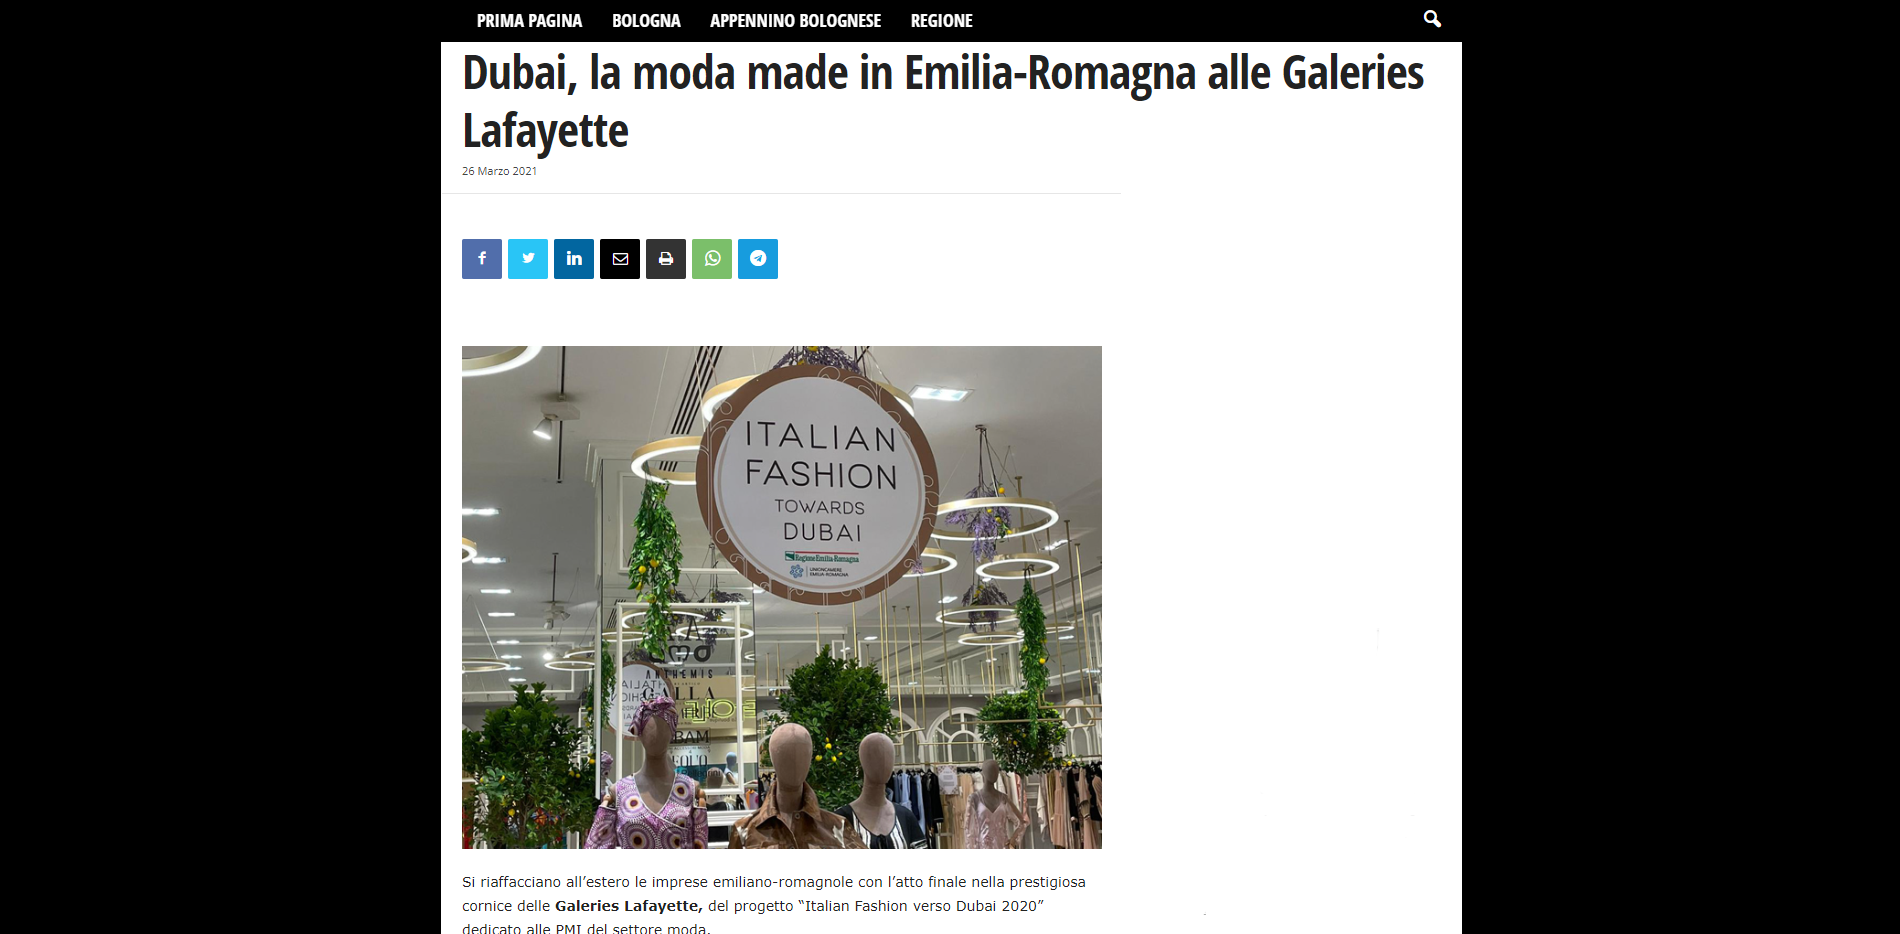 Bologna2000 | Dubai, la moda made in Emilia-Romagna alle Galeries Lafayette